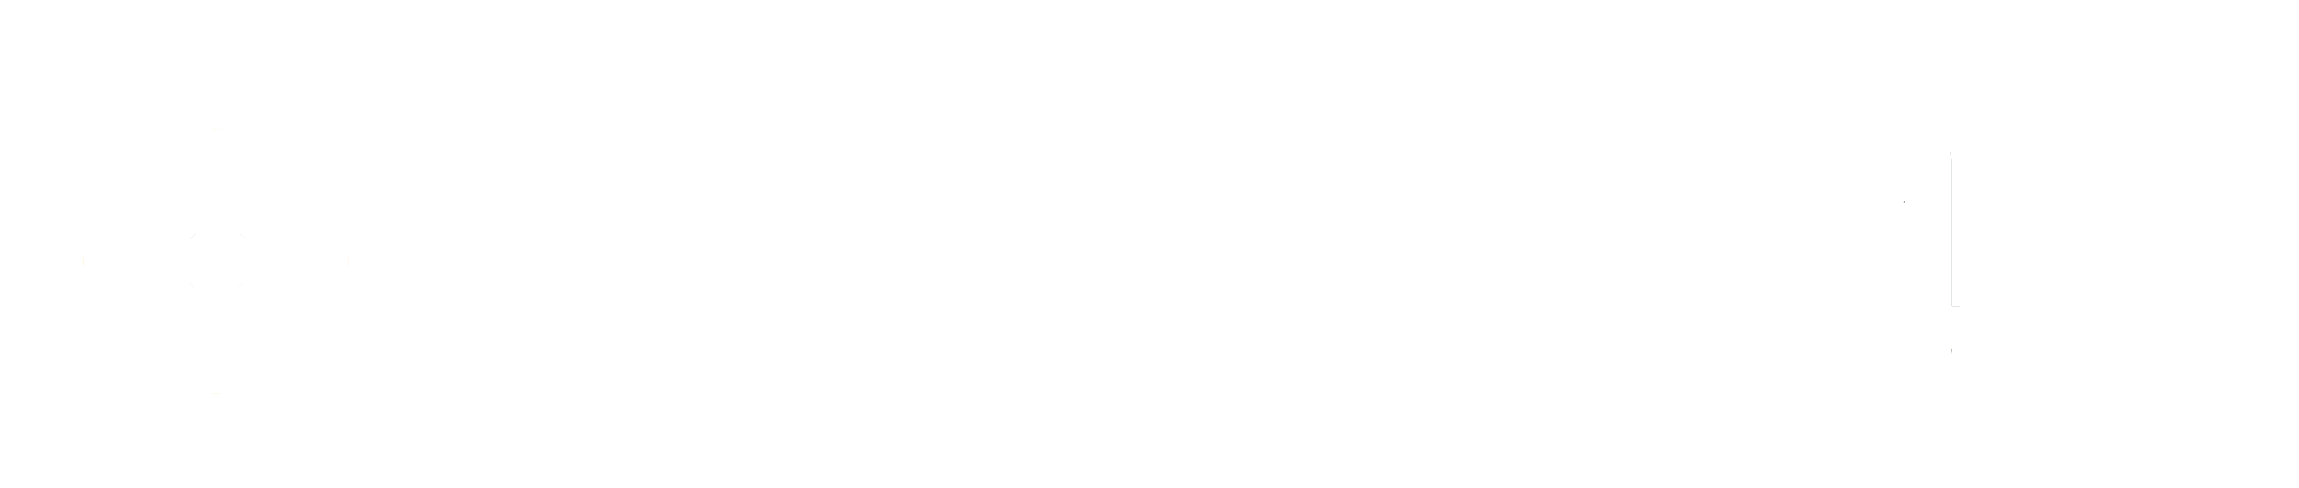 VIS 2024